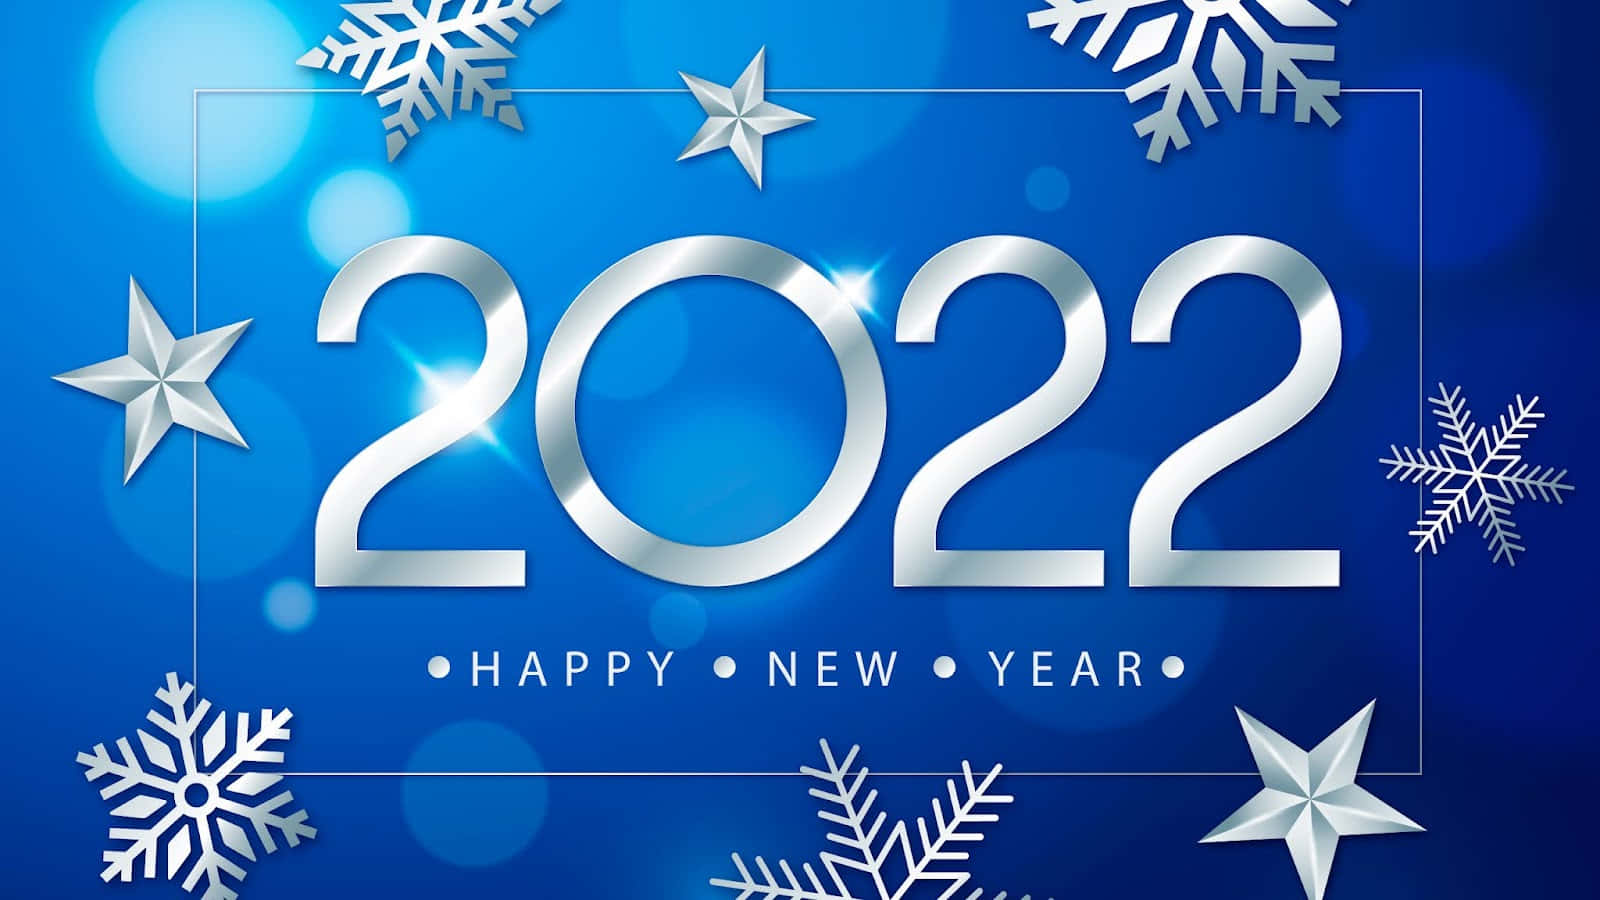 Feliceanno Nuovo 2020 Con Fiocchi Di Neve E Lettere Argentate.